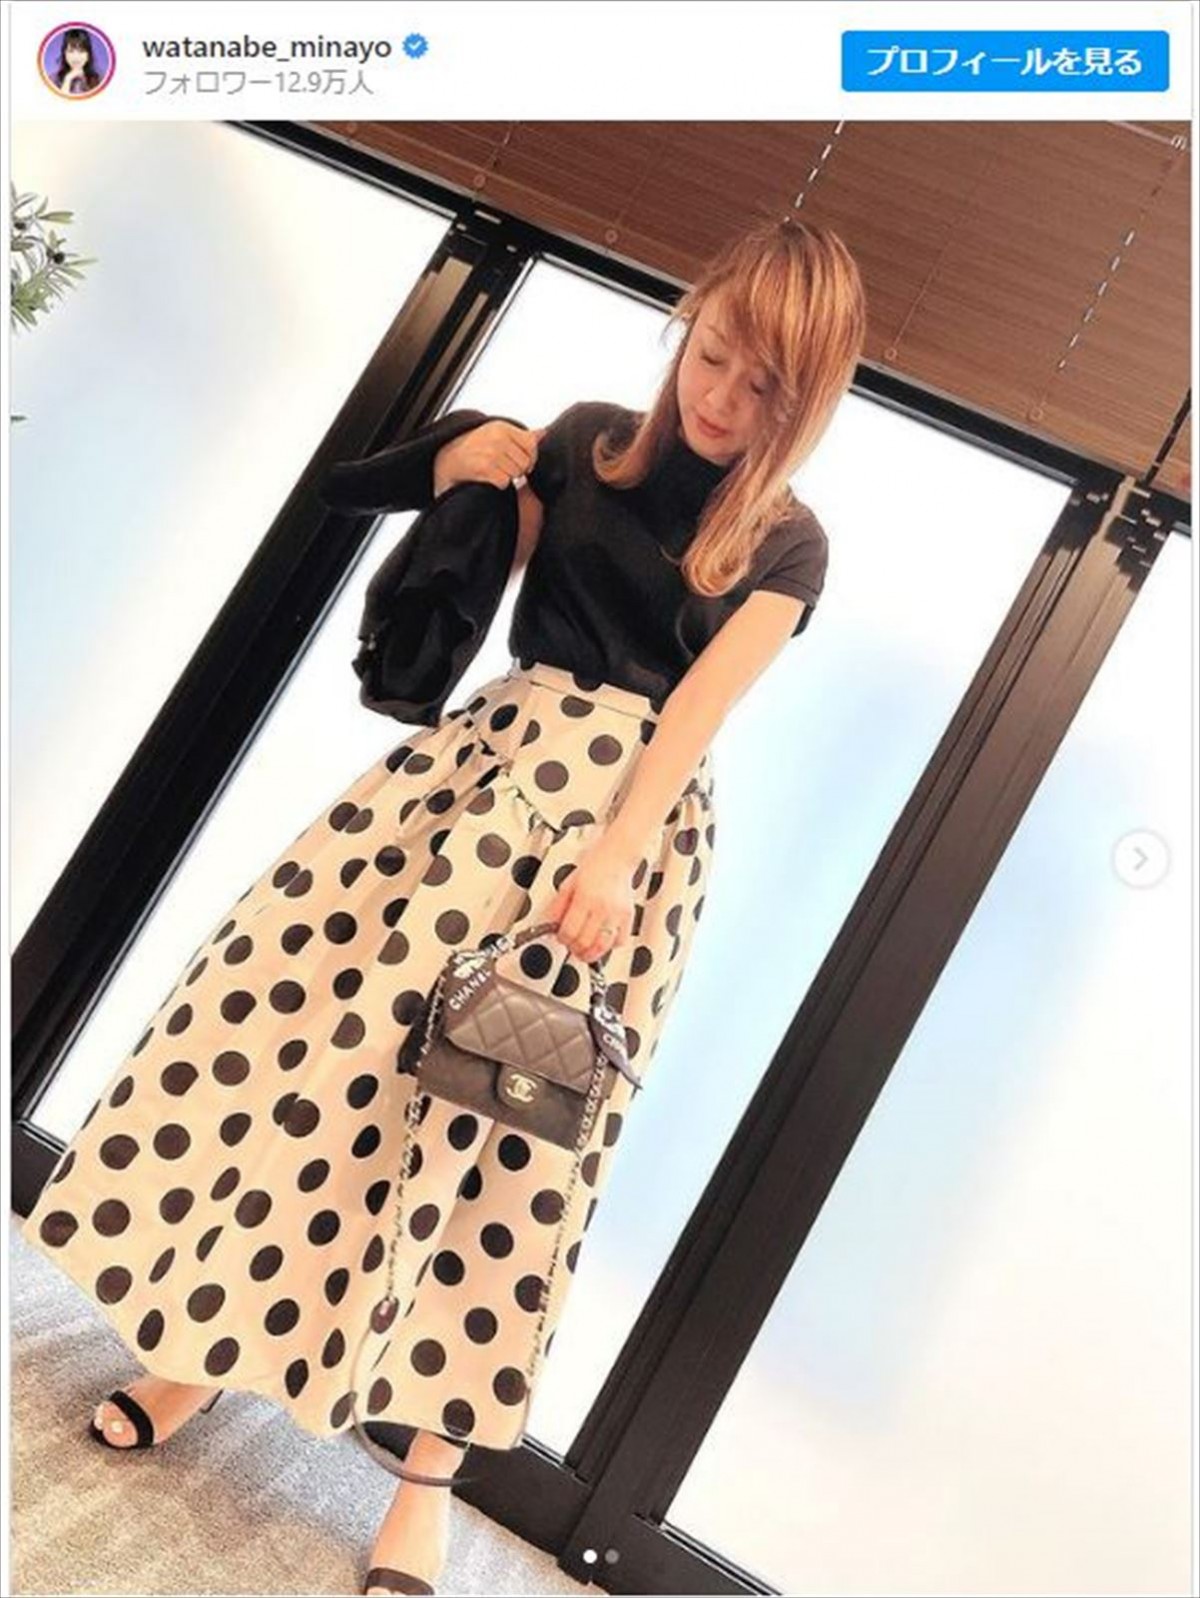 渡辺美奈代52歳、シック×キュートな水玉ロングスカートコーデ披露「おニャン子時代よりも今が素敵」